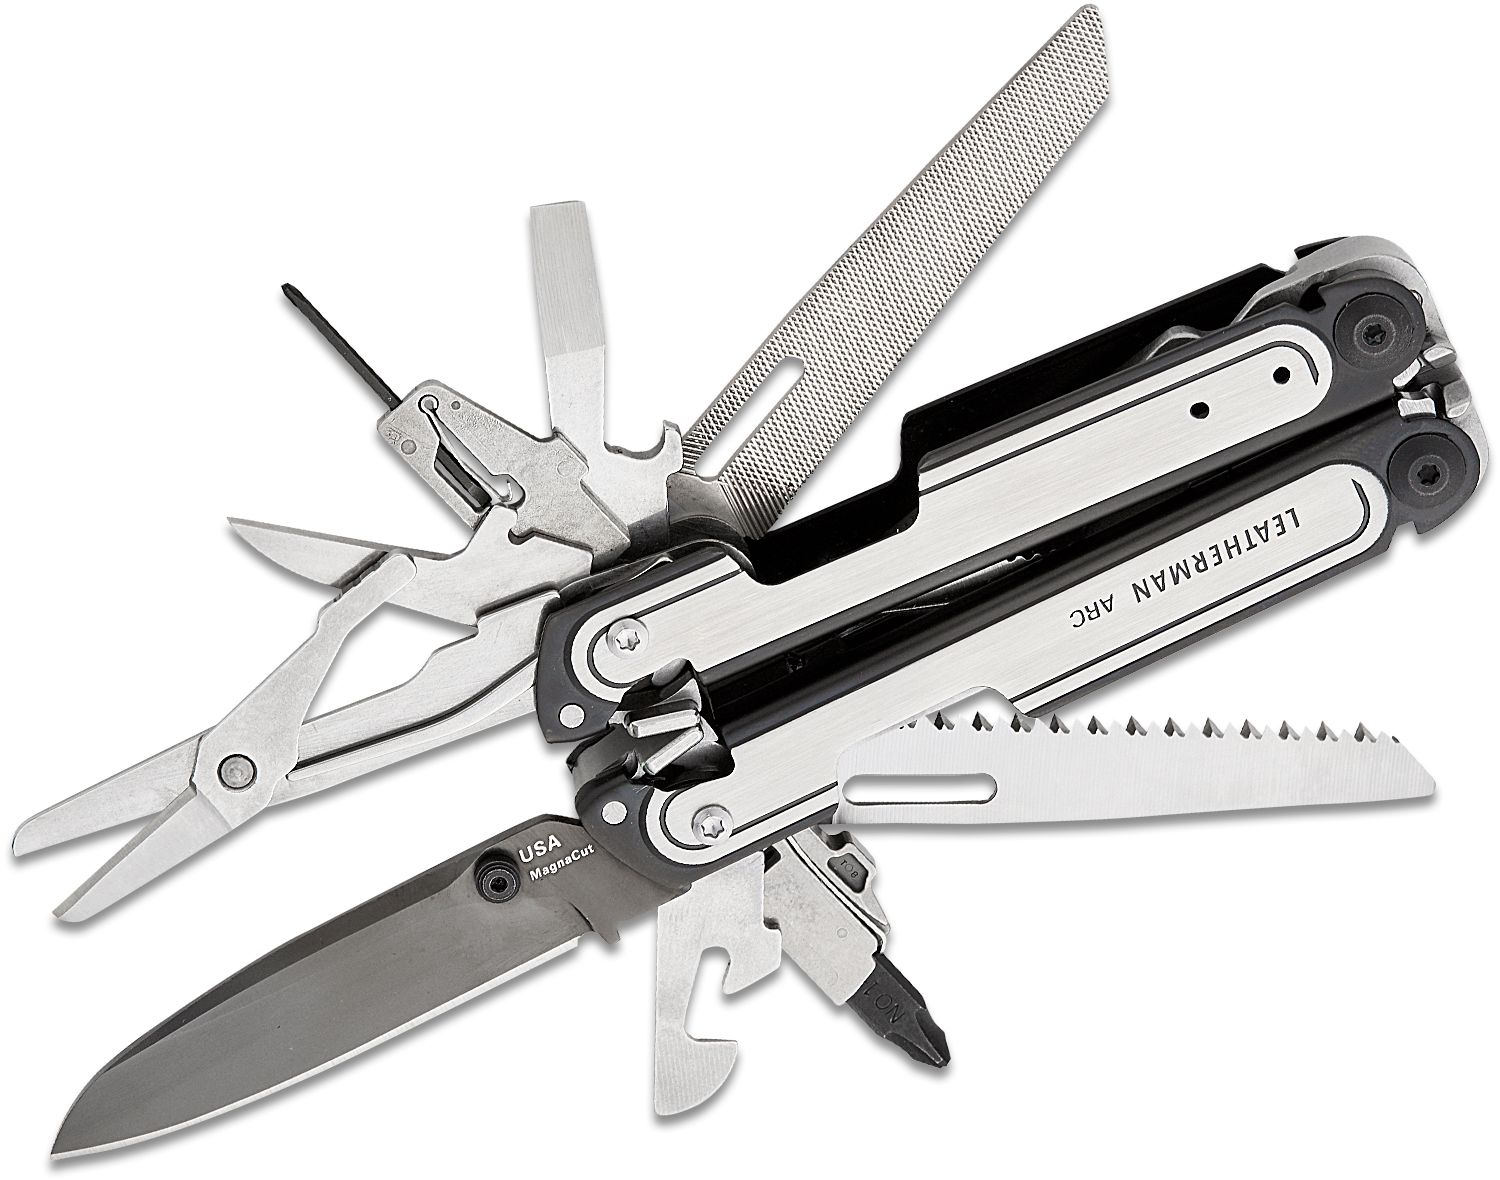 New Leatherman ARC Multi-Tool Boasts Super-Steel Knife